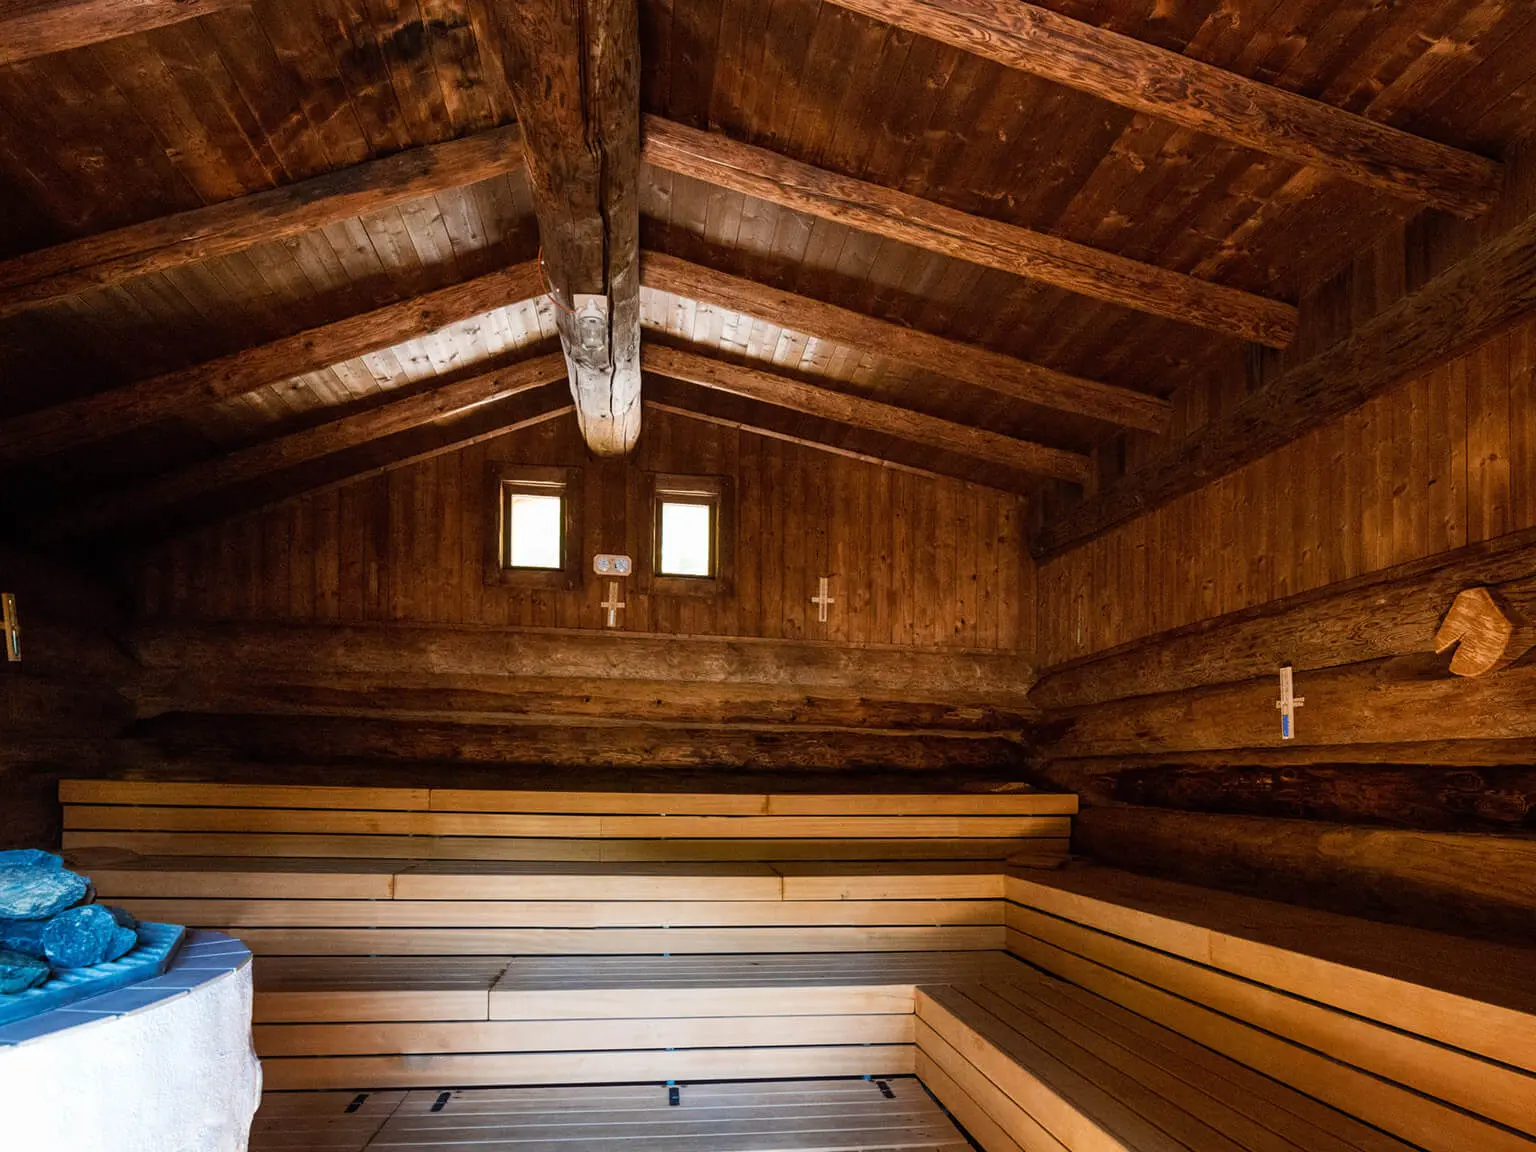 Innenansicht einer Sauna. Das helle Holz im mittleren und unteren Bereich sind Sitzbänke, das dunkle das Gebäude an sich. Vorne links ist ein Teil eines Aufgussofens zu sehen.